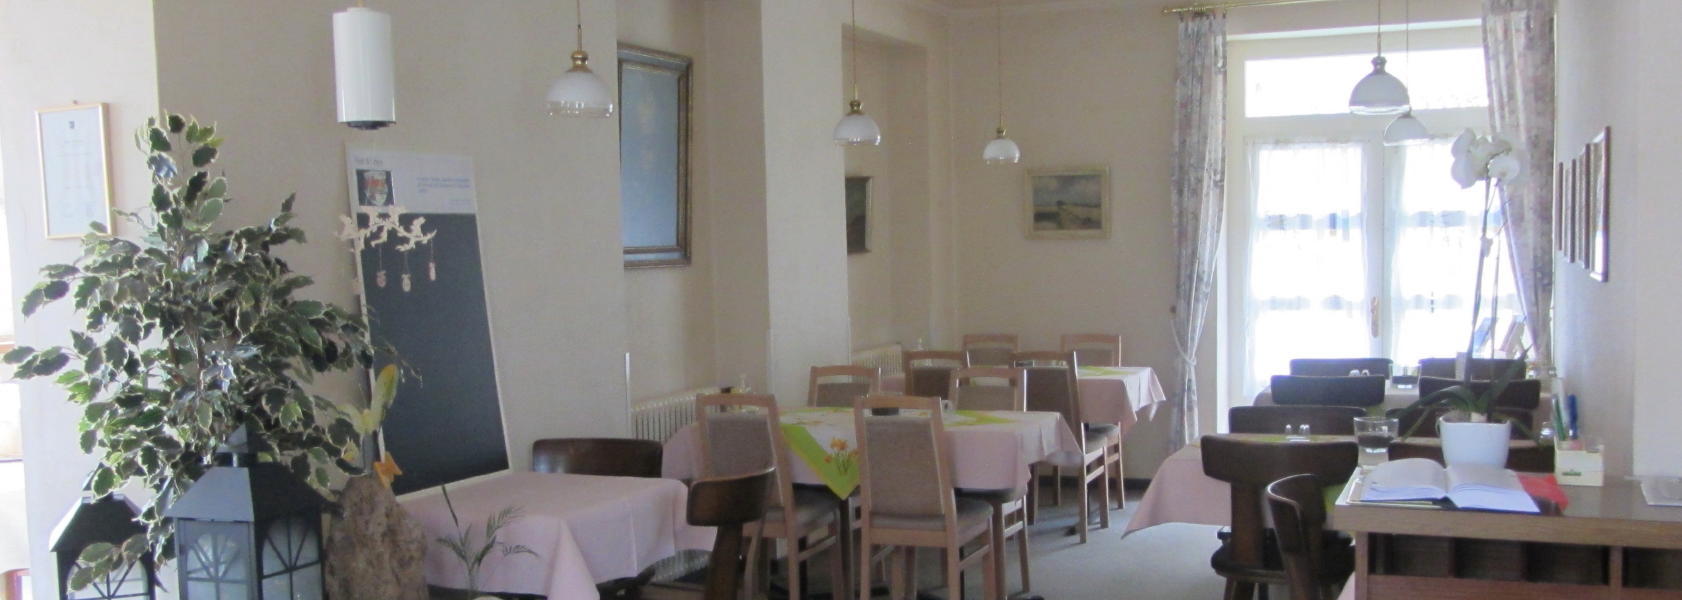 restaurant01.jpg